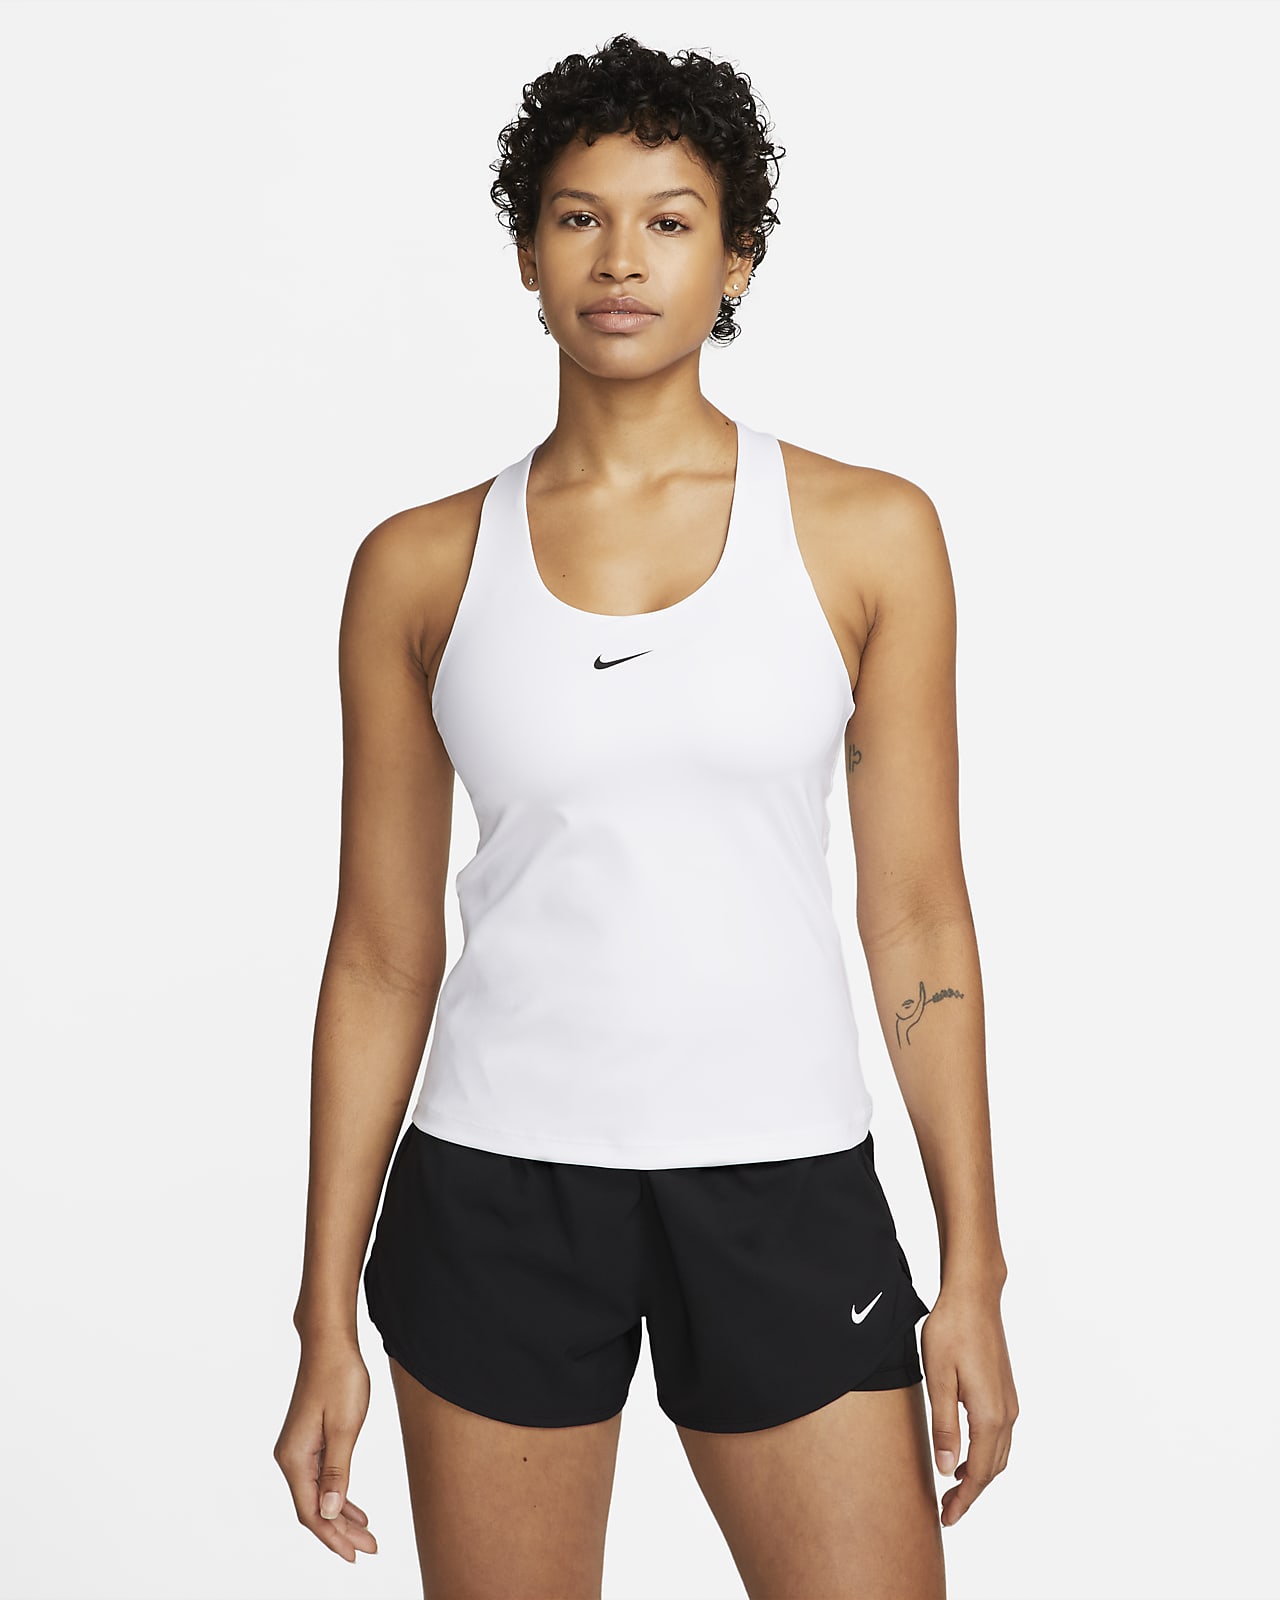 Camisola sem mangas com sutiã de desporto almofadado de suporte médio Nike Swoosh para mulher